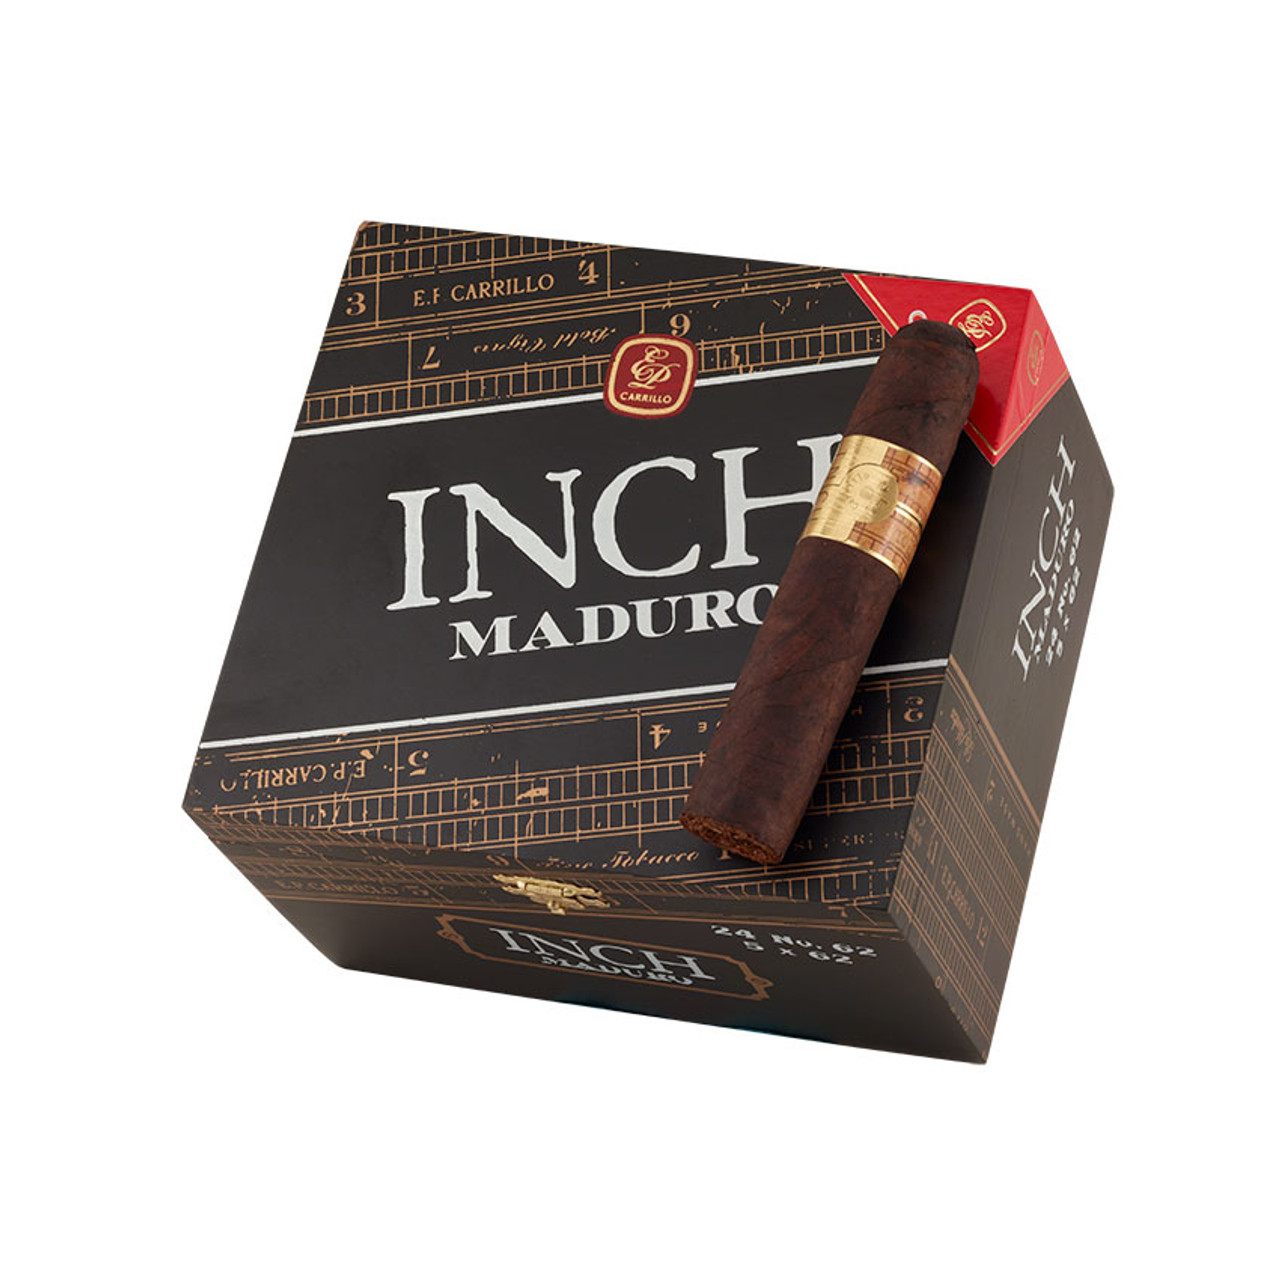 INCH Maduro by E.P. Carrillo No. 62 Cigars - 5 x 62 (Box of 24) *Box